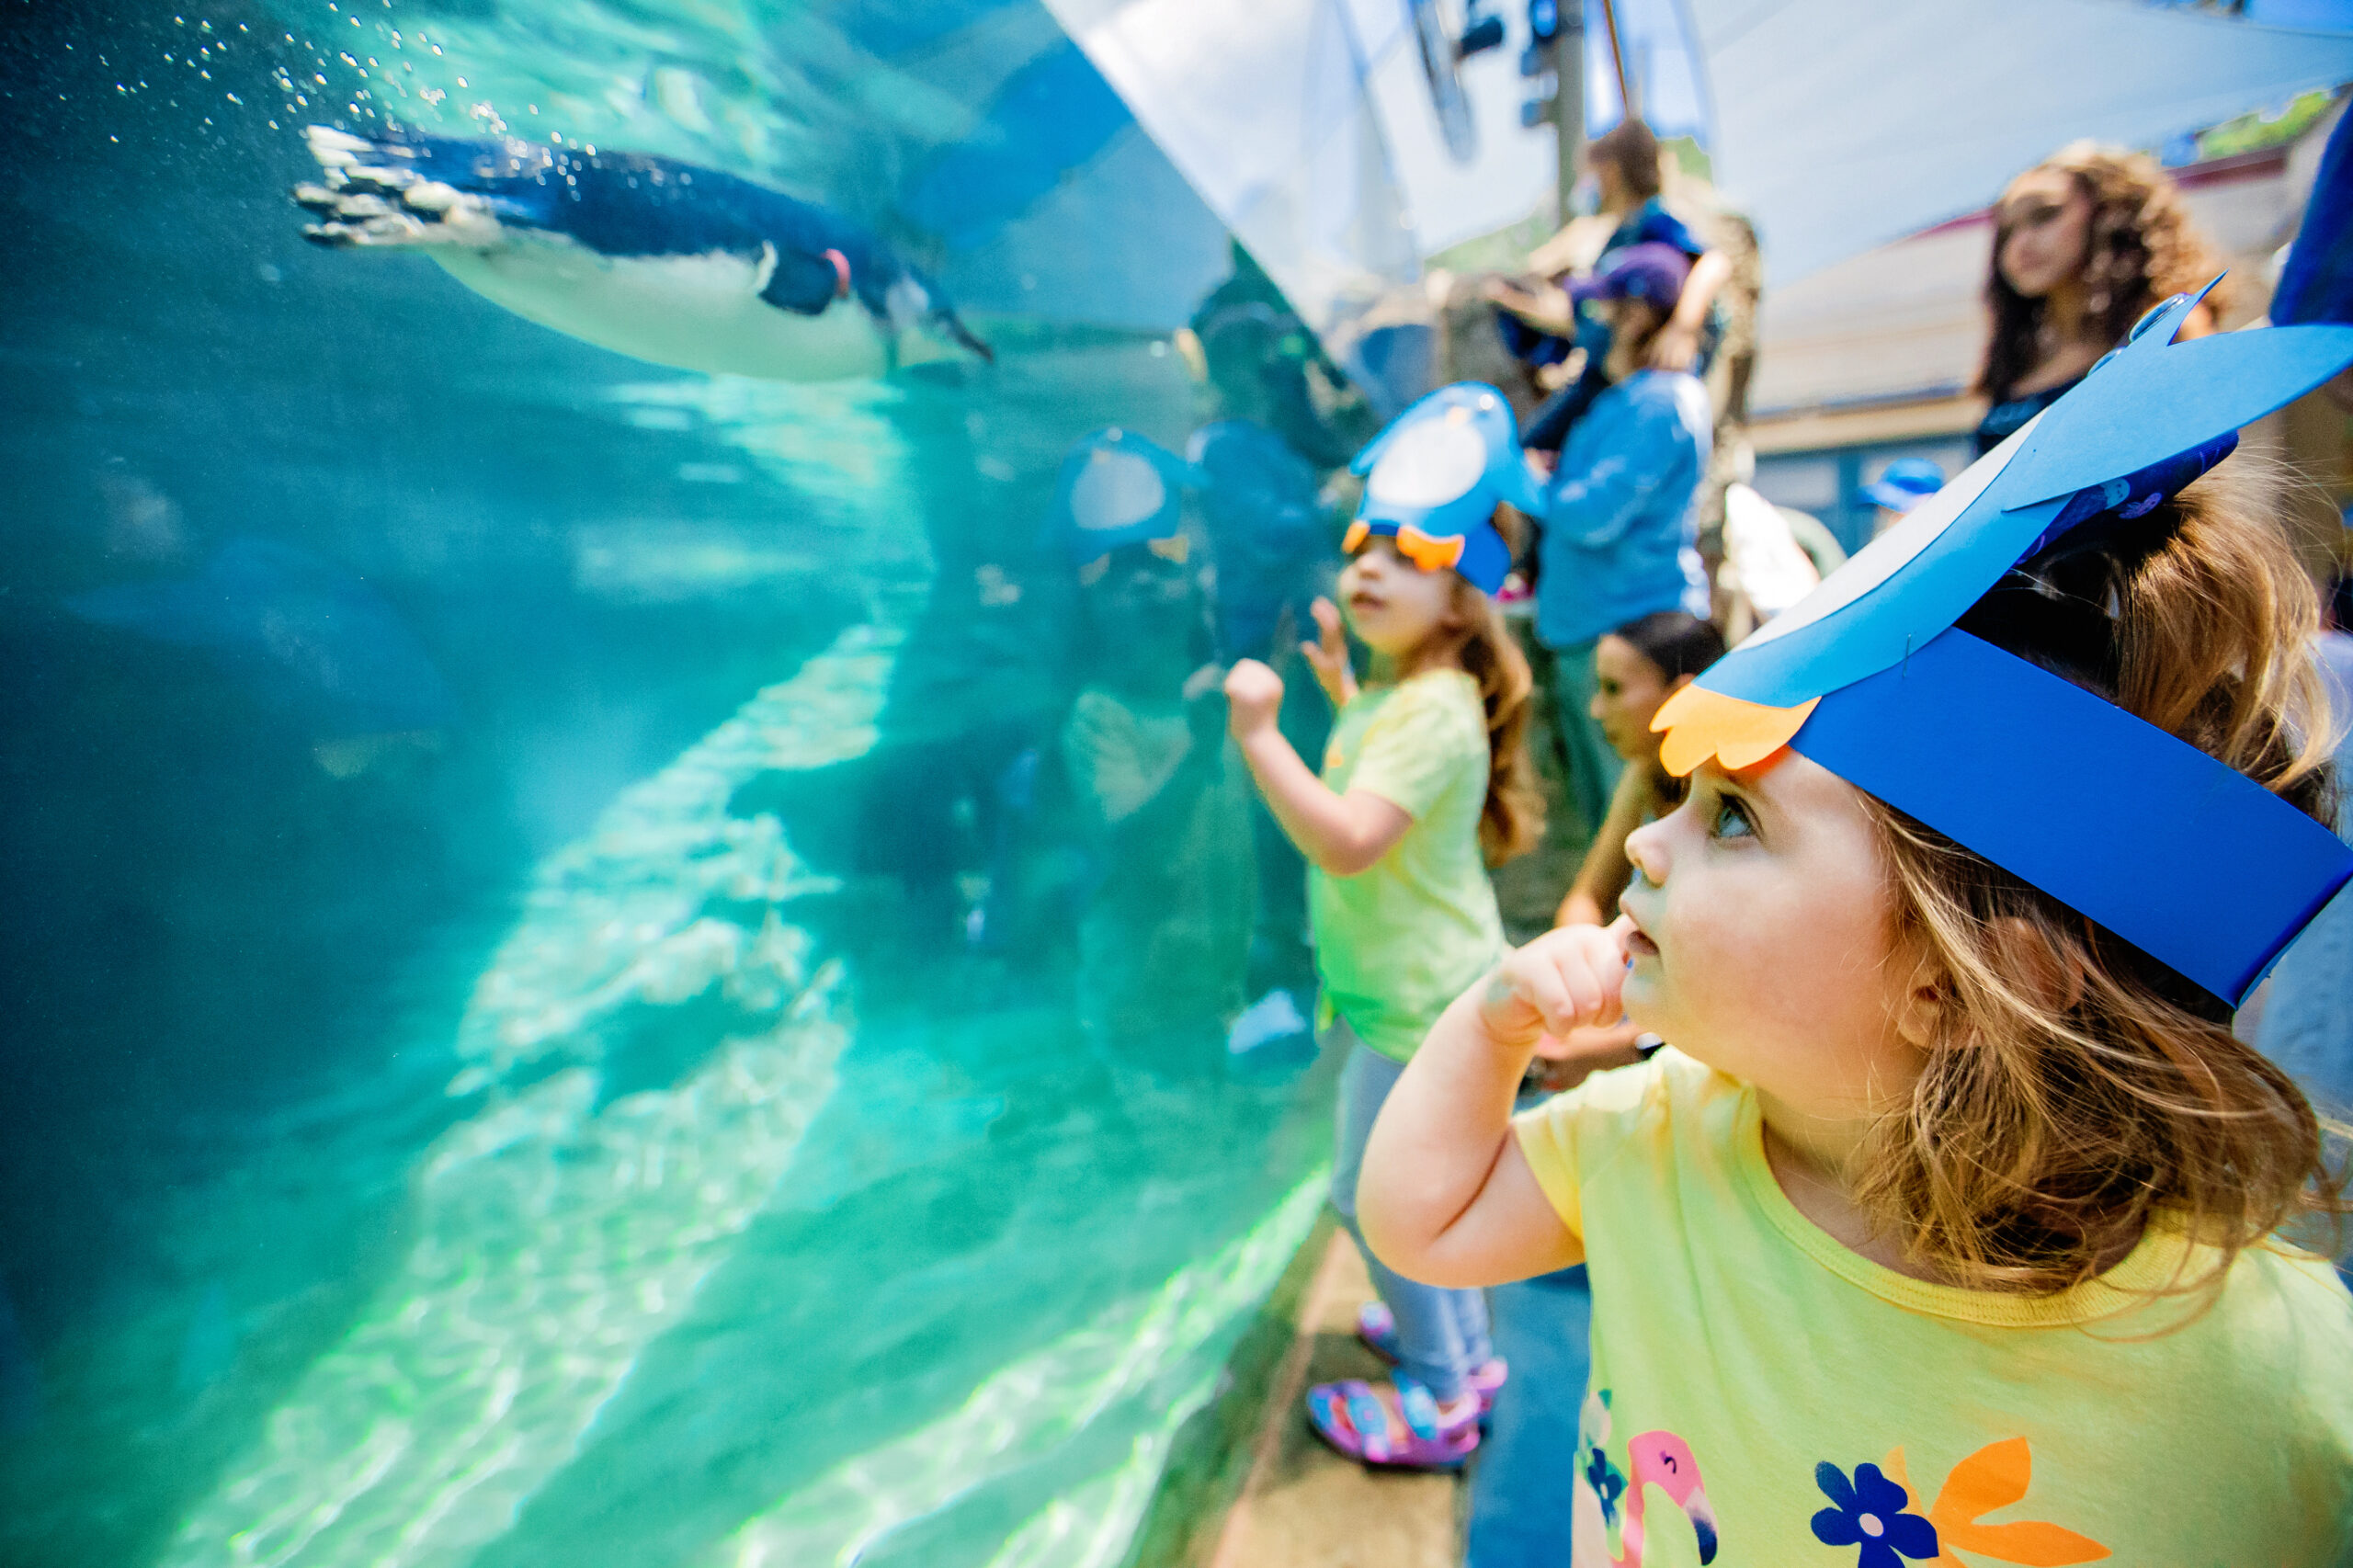 Birch Aquarium Presents Little Blue Penguins